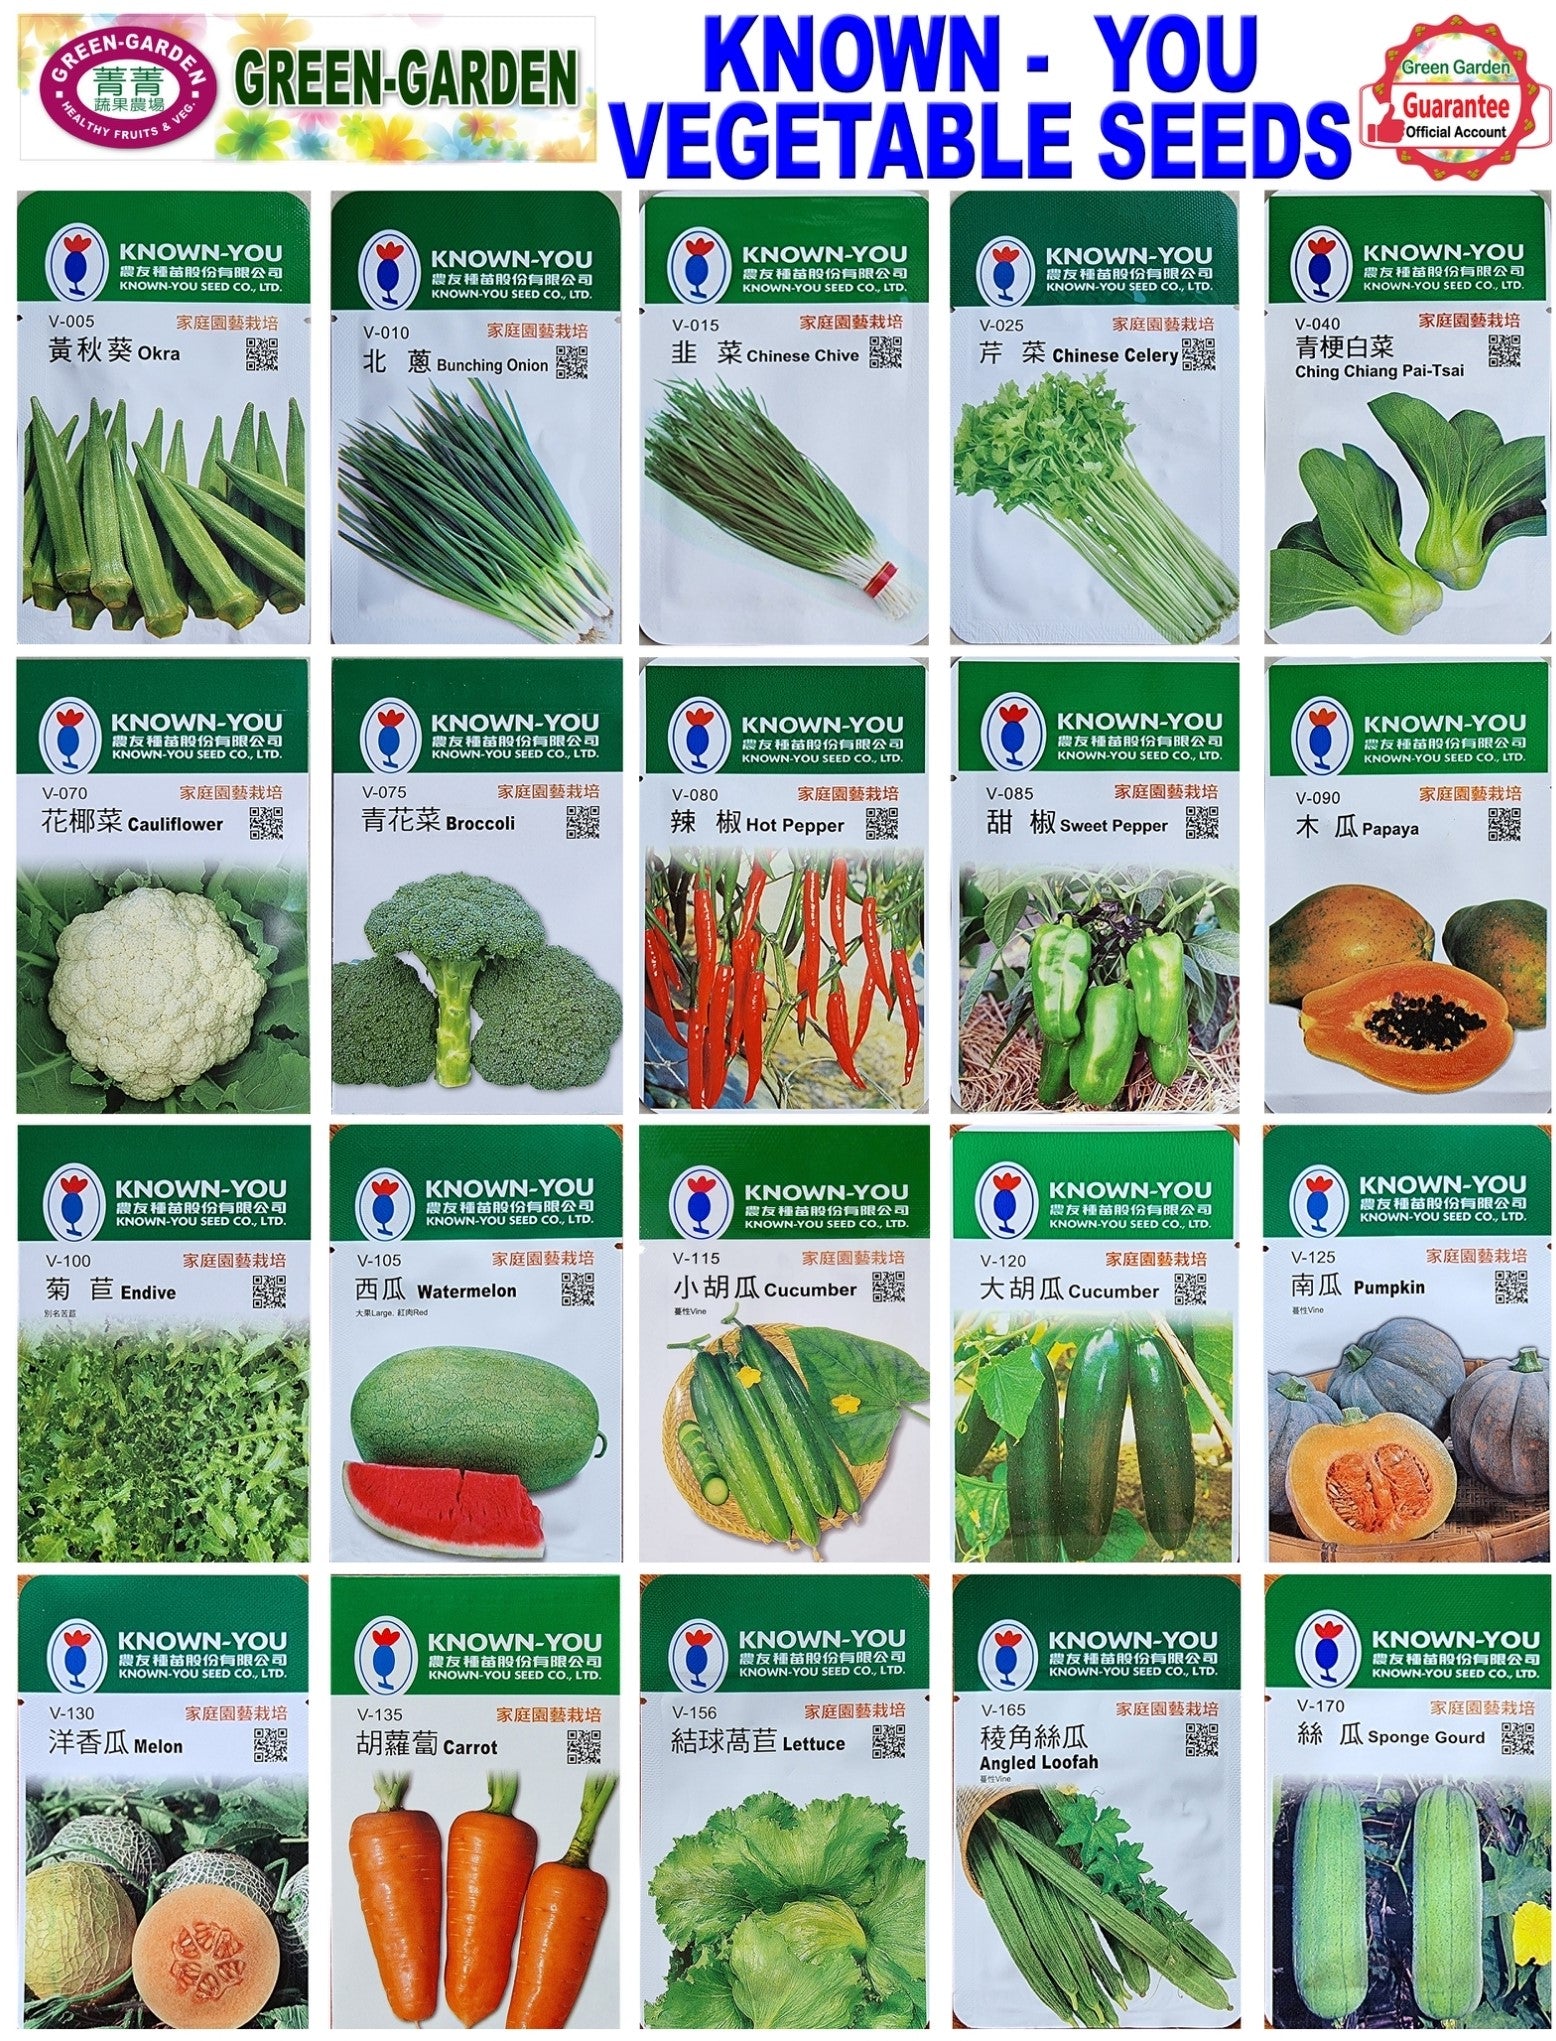 Known You Vegetable Seeds (V-365 Pumpkin)